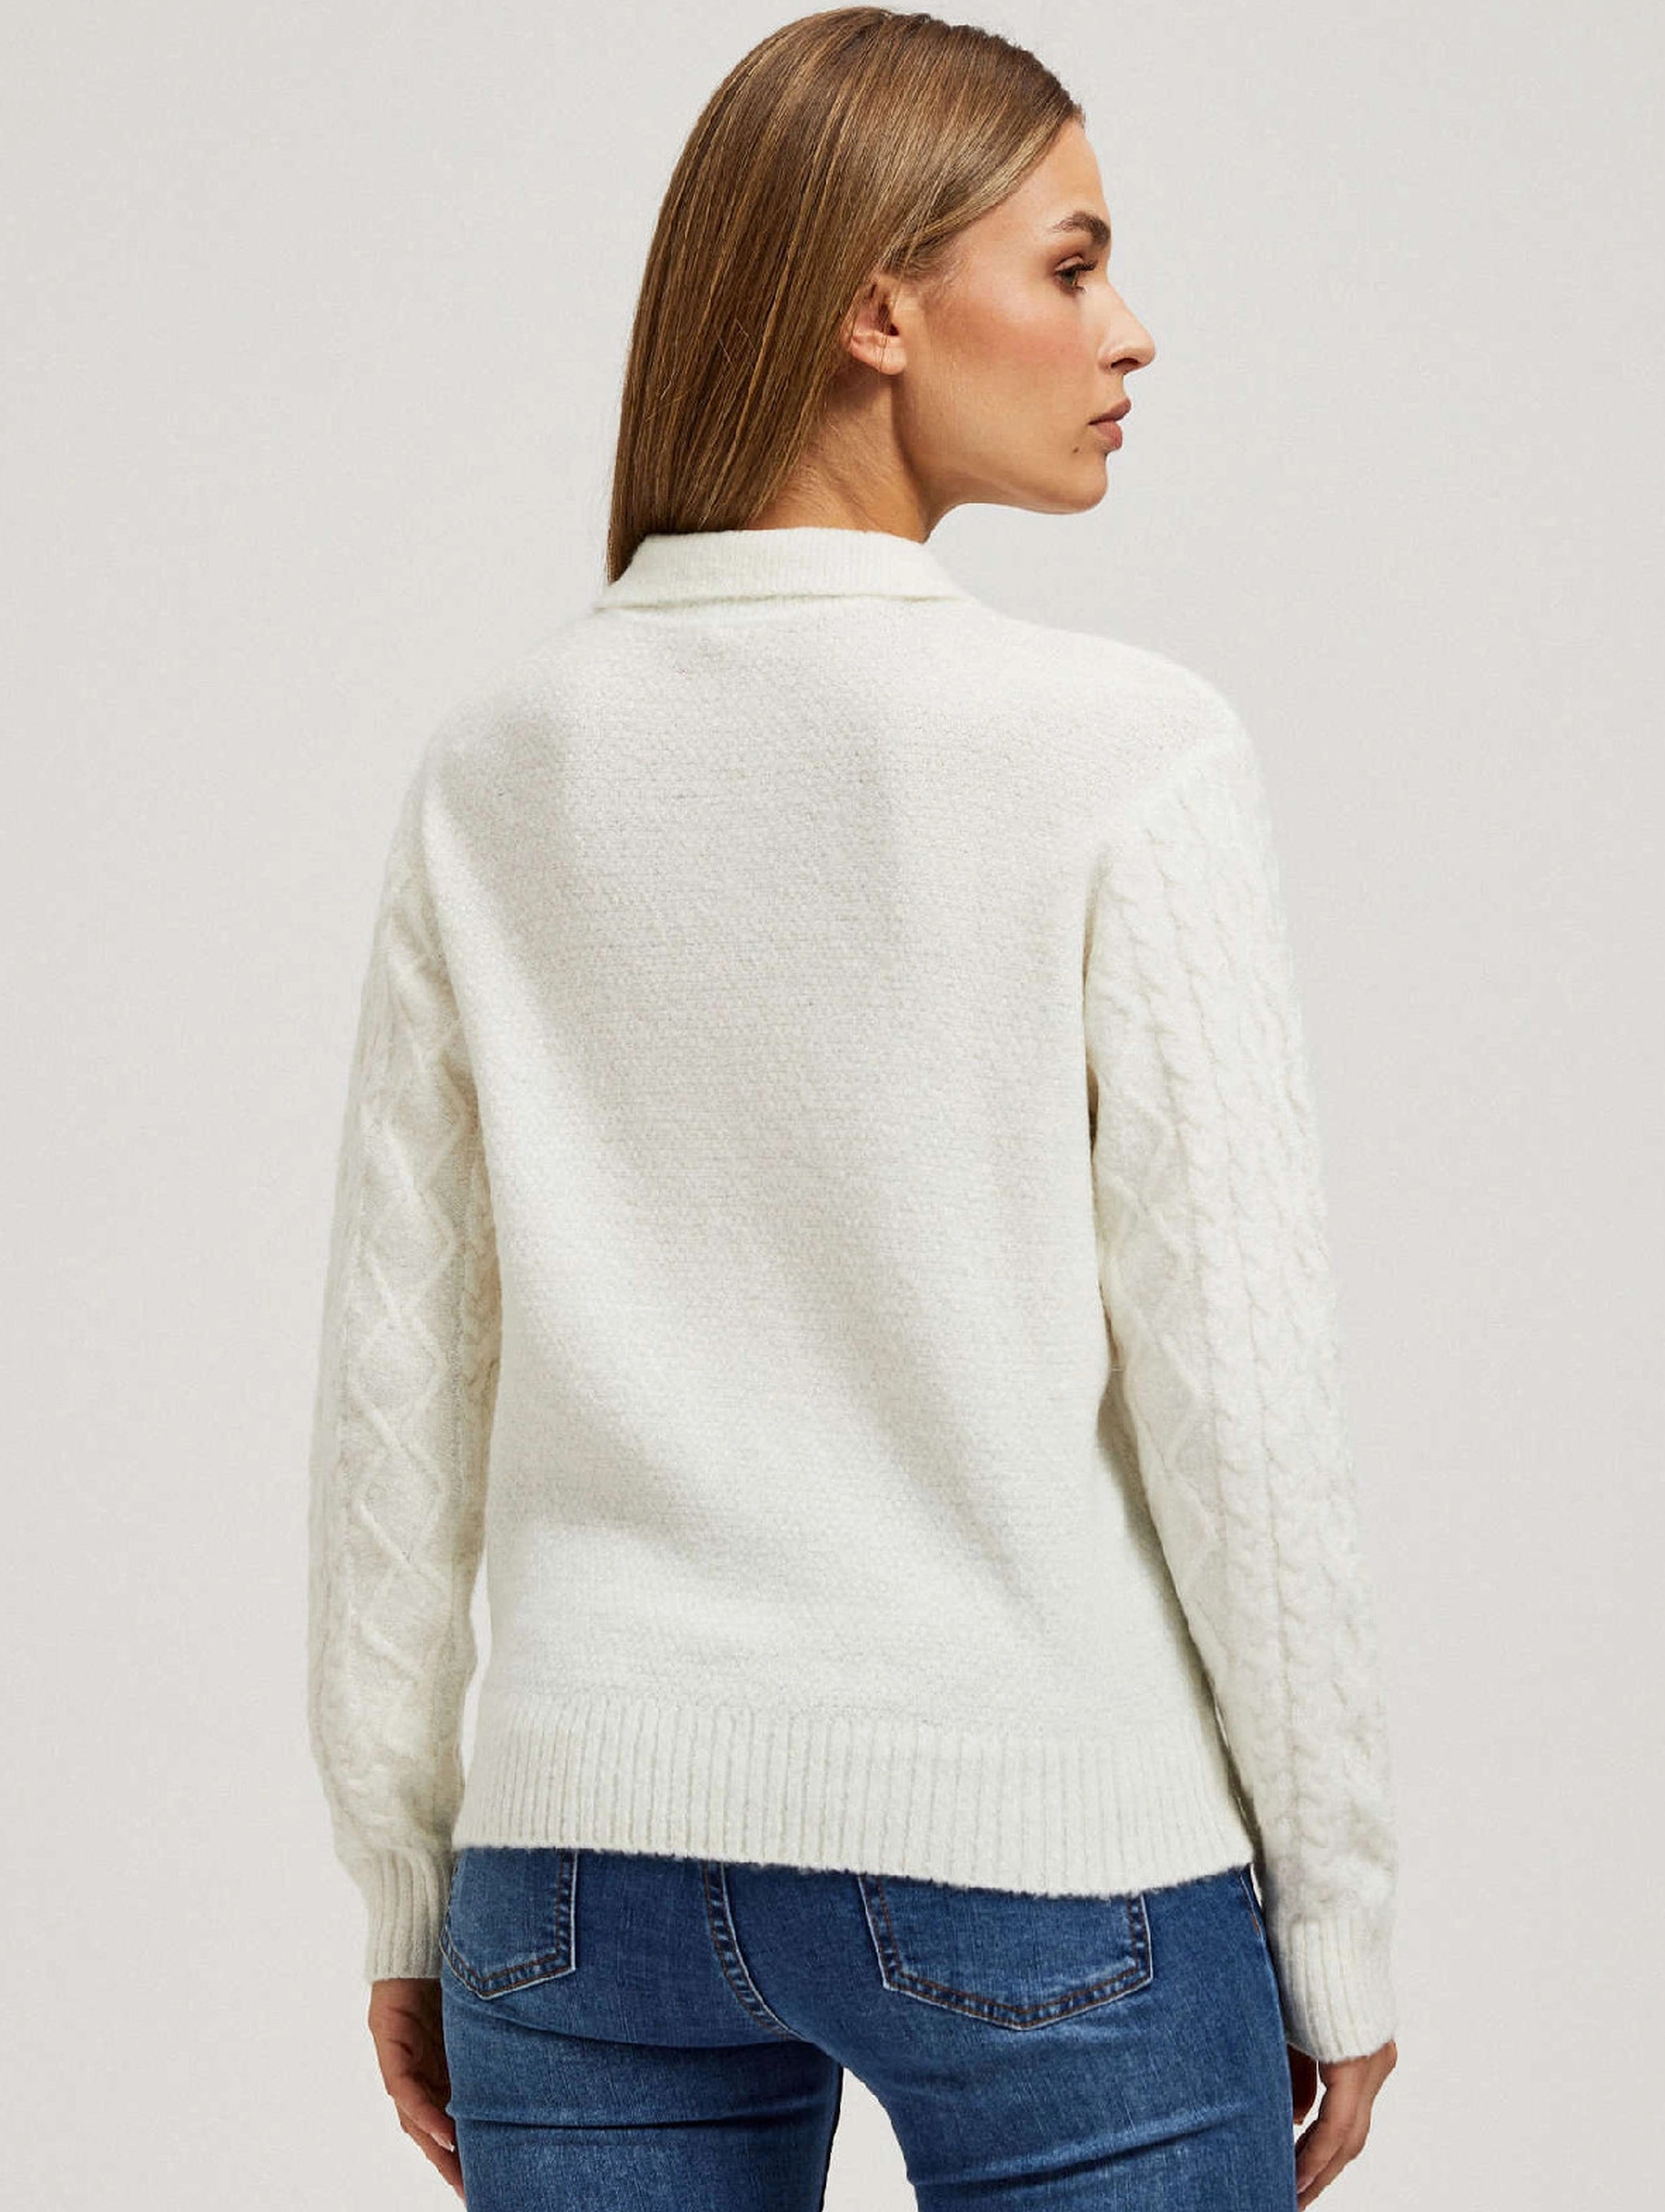 Kremowy sweter damski z warkoczowym splotem